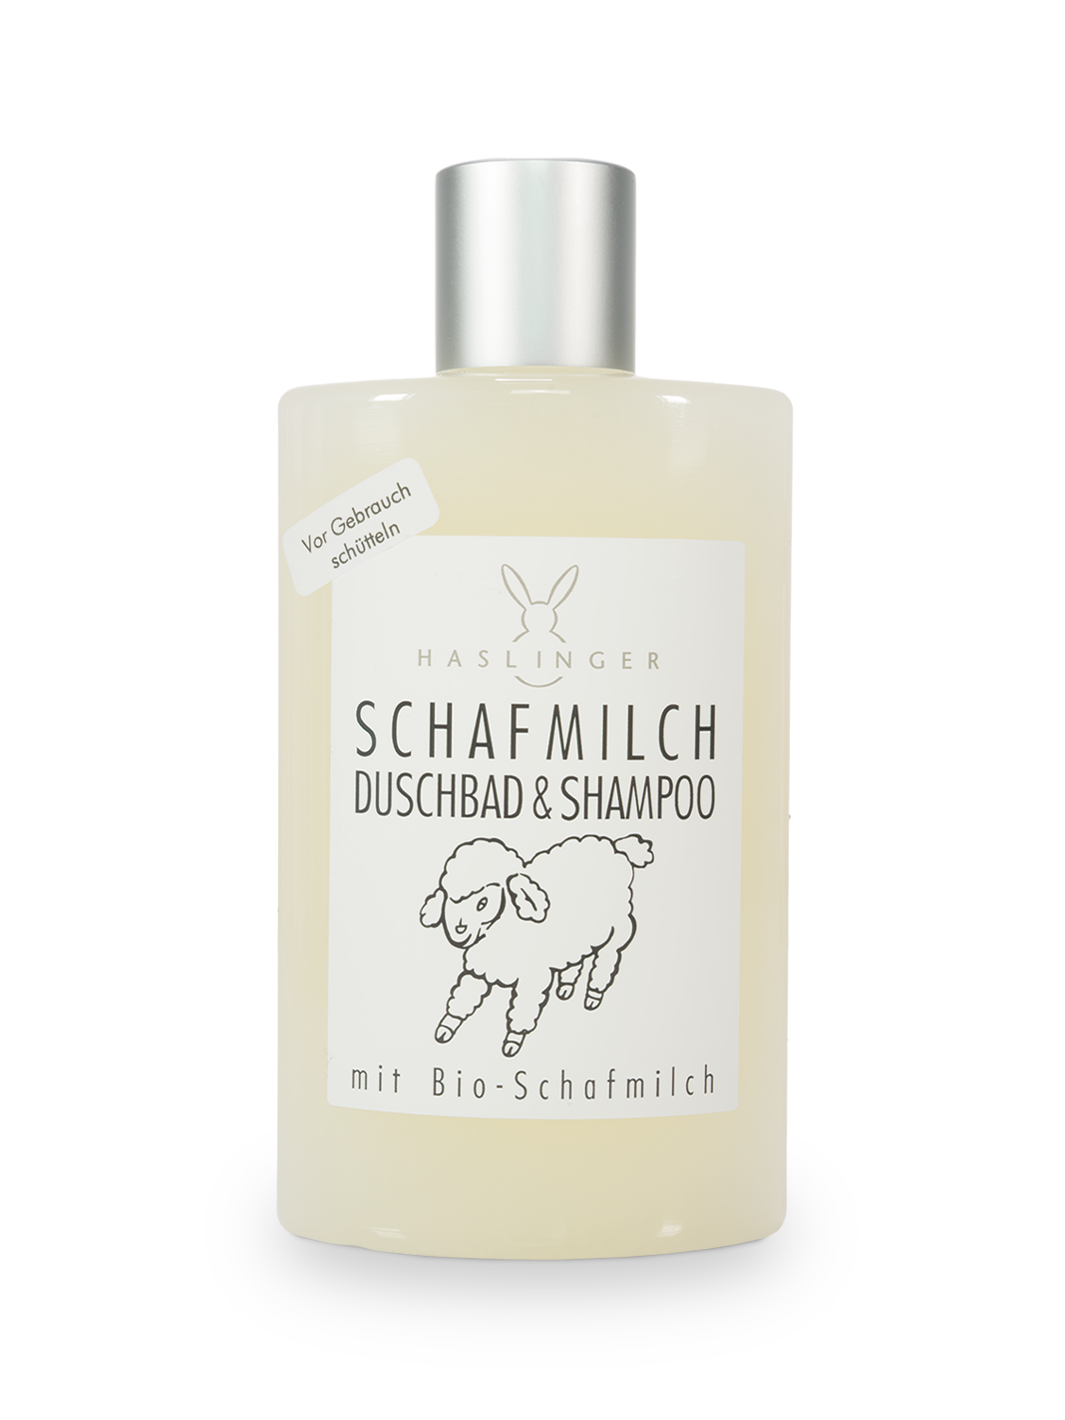 Haslinger Schafmilch Duschbad & Shampoo 200ml